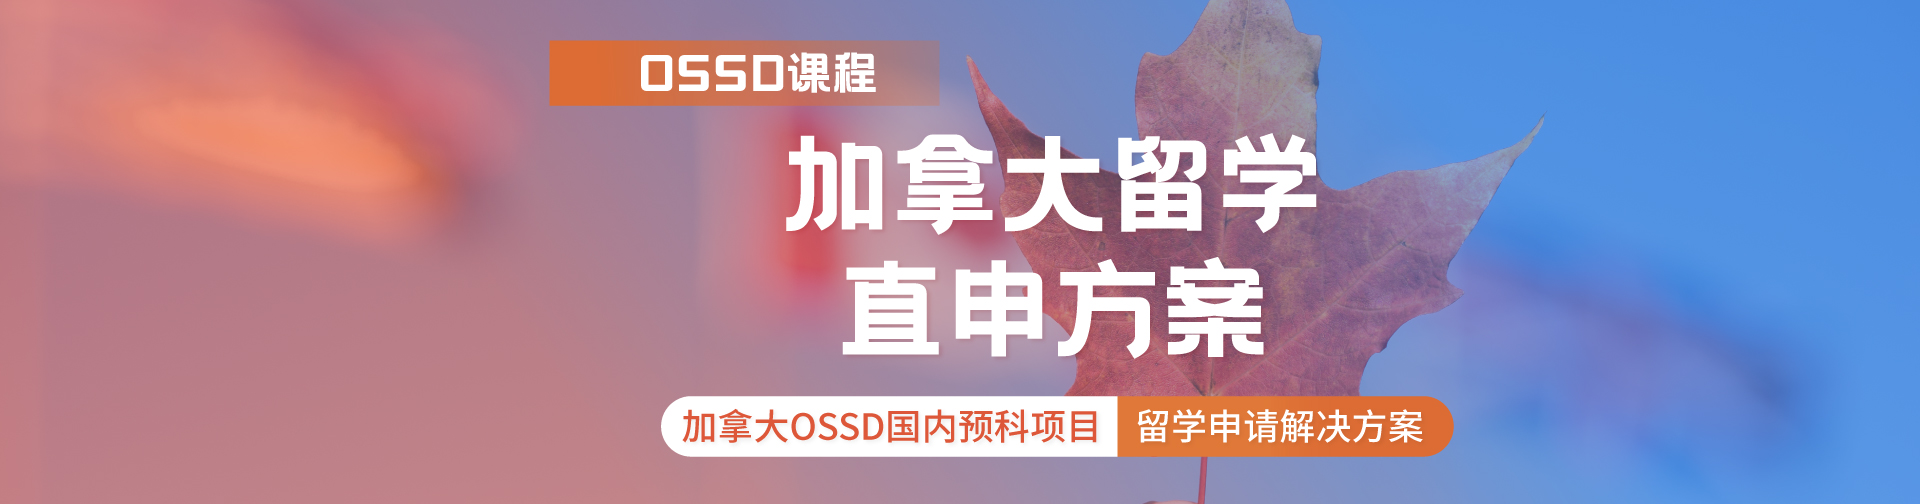 广州新航道加拿大OSSD国内预科项目